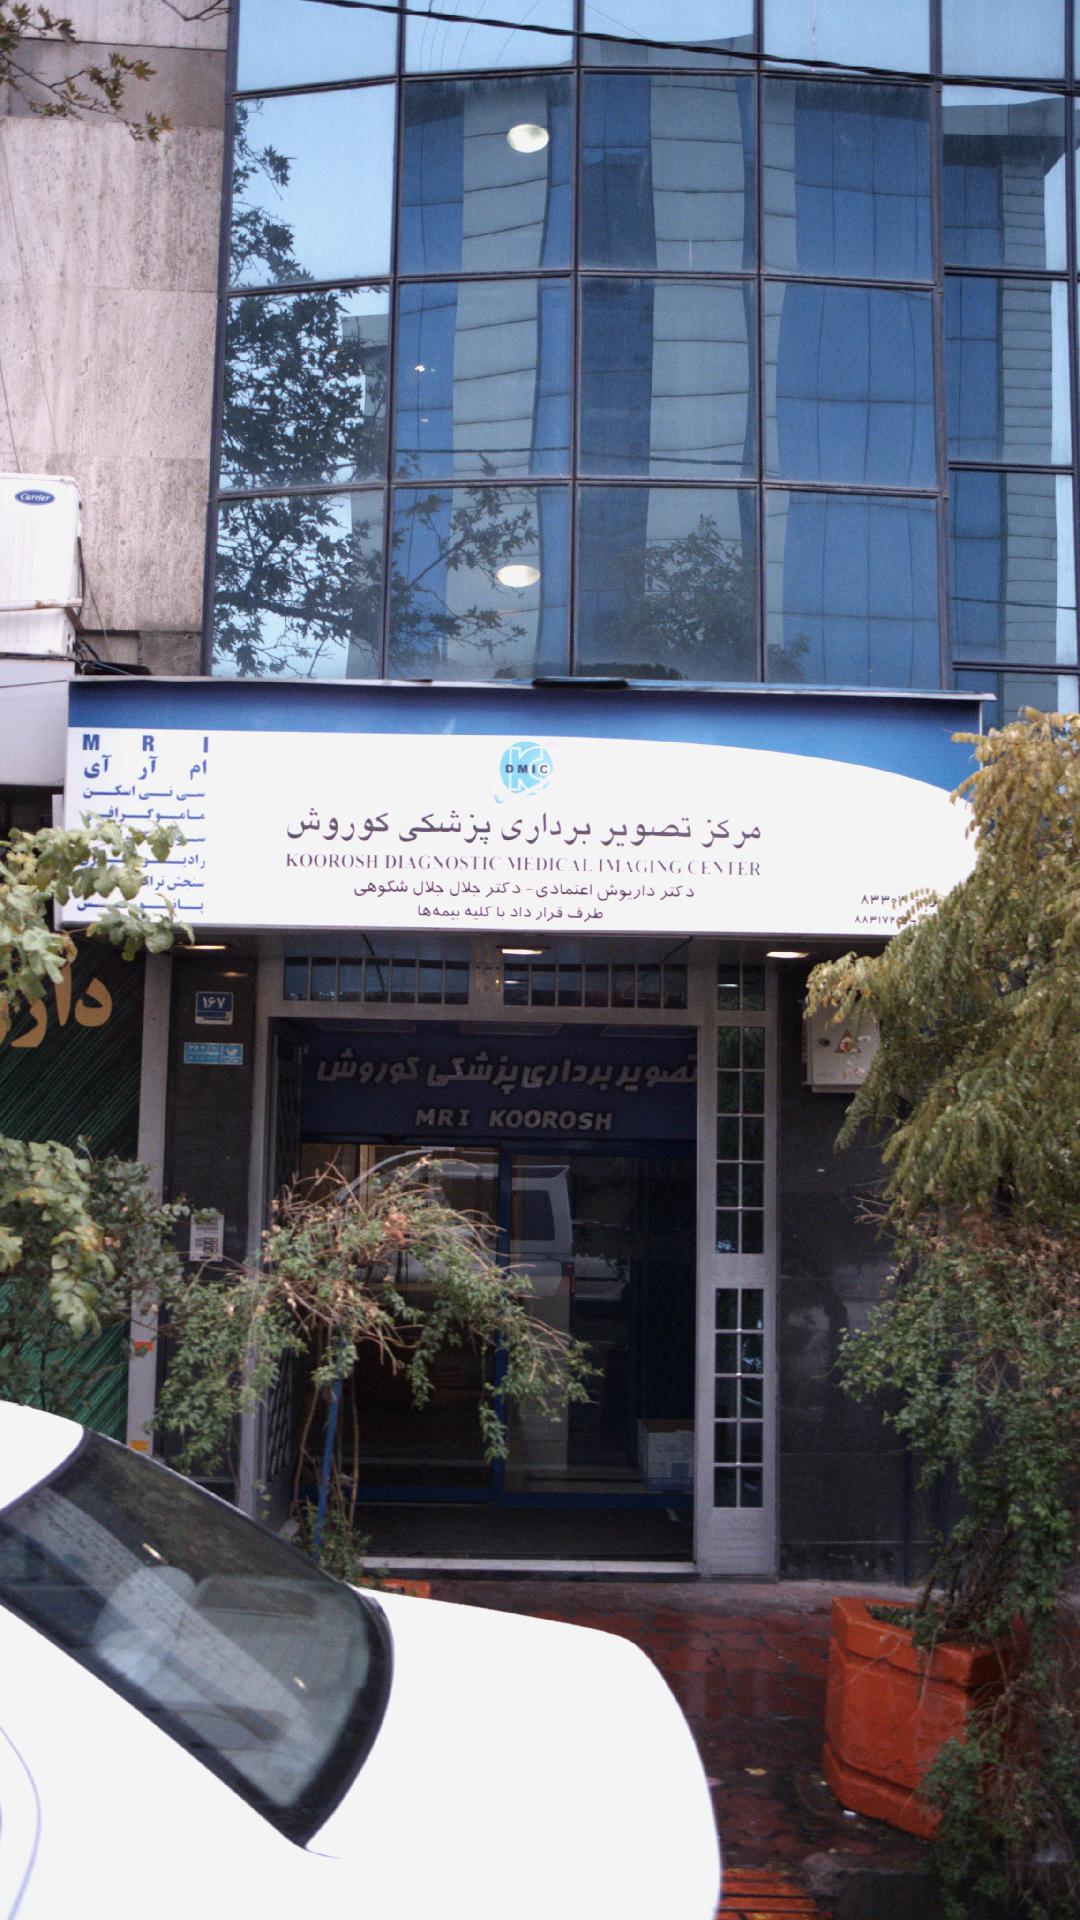 مرکز تصویر برداری پزشکی کوروش تهران